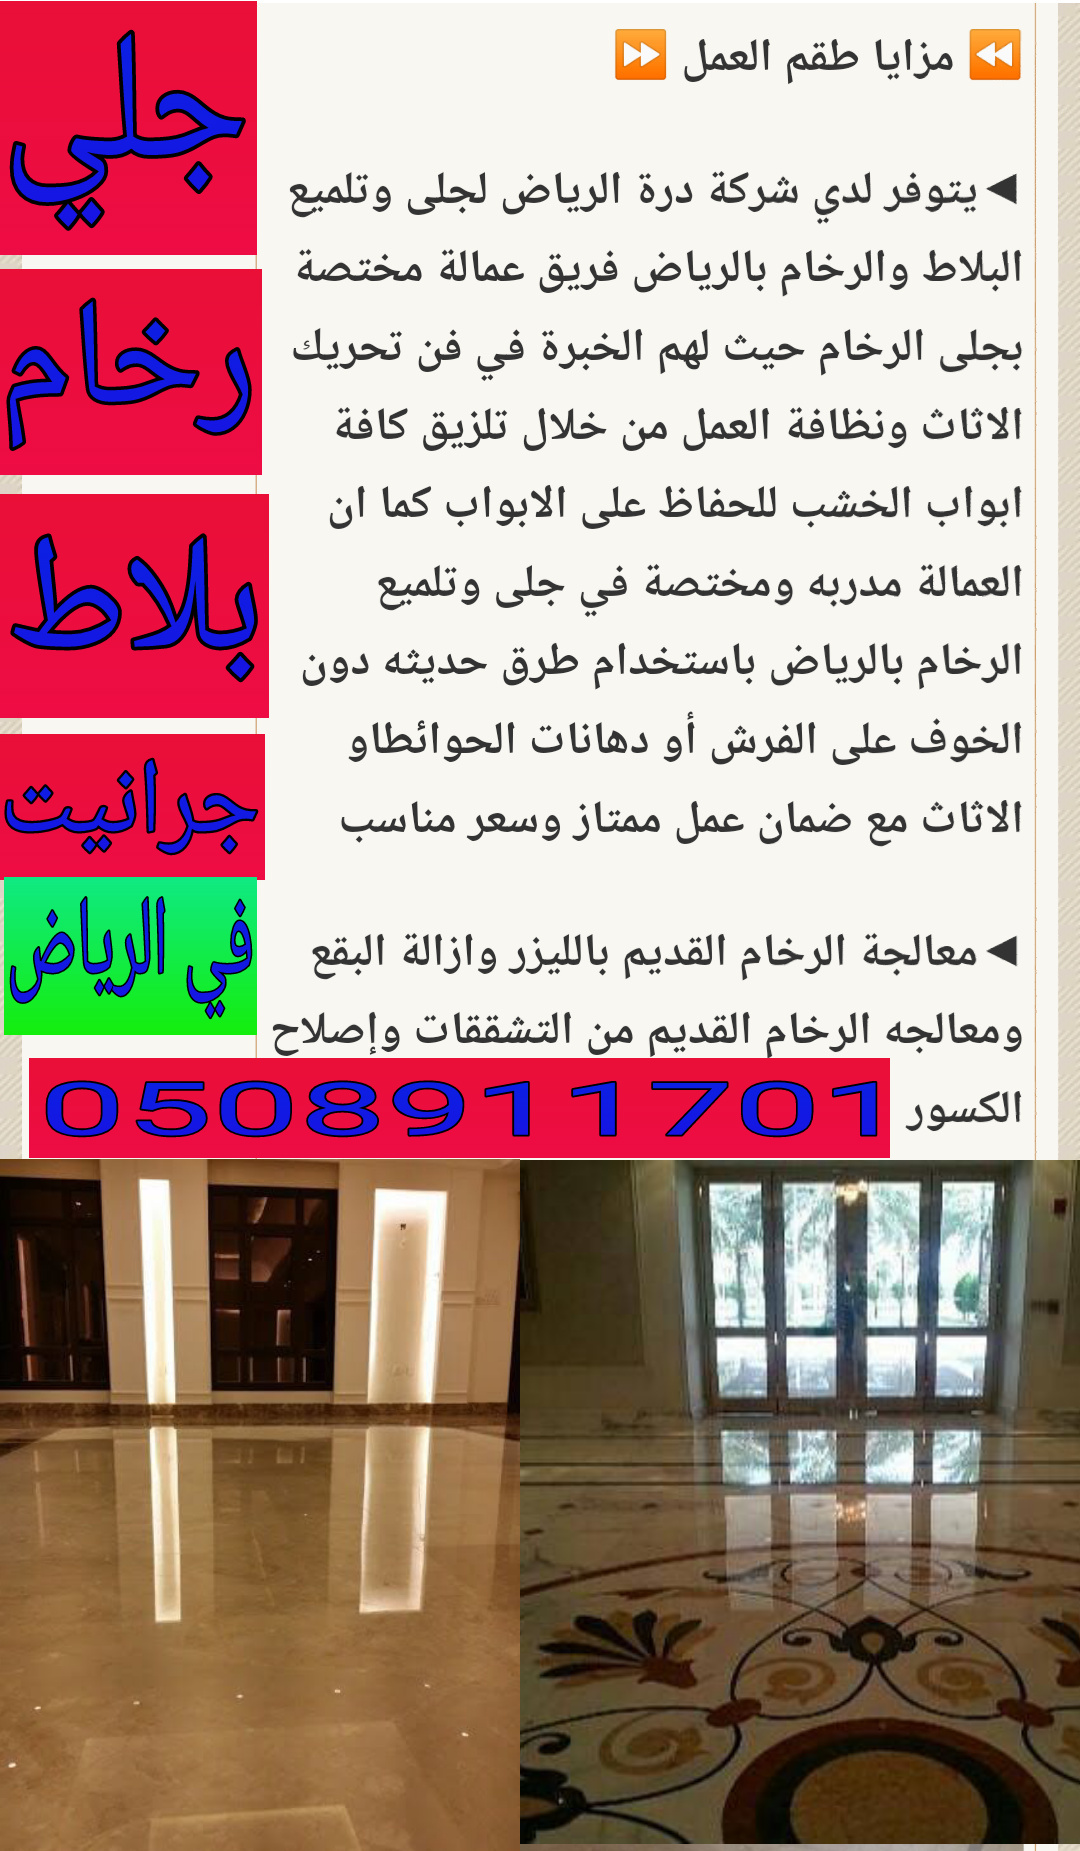 درة الرياض لخدمات جلى رخام بالرياض0508911701 جلى بلاط بالرياض،جلى وتلميع رخام بالرياض P_1238jxri05